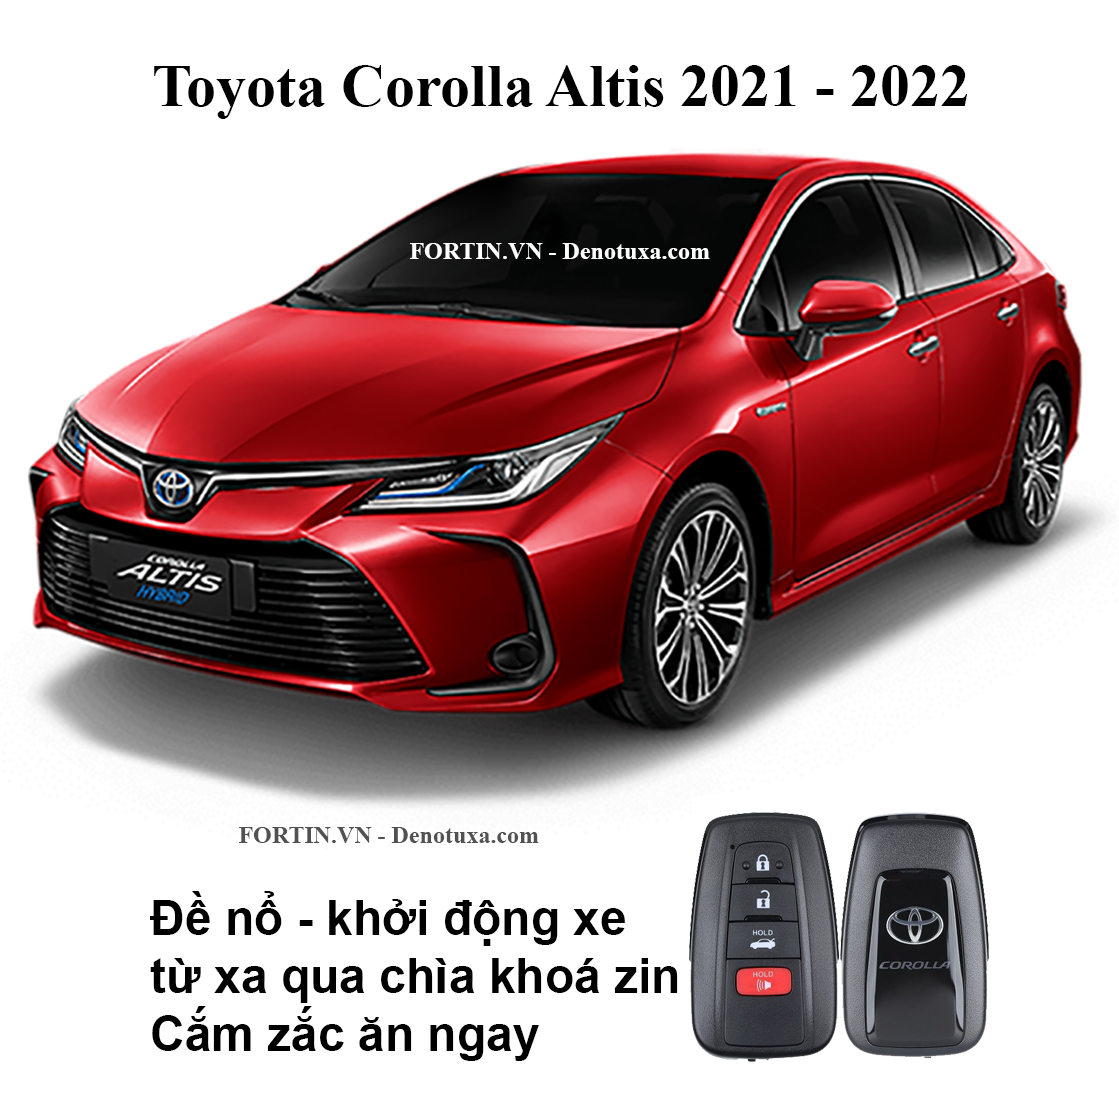 Toyota Altis 2021 18G CVT số tự động giá bán hấp dẫn